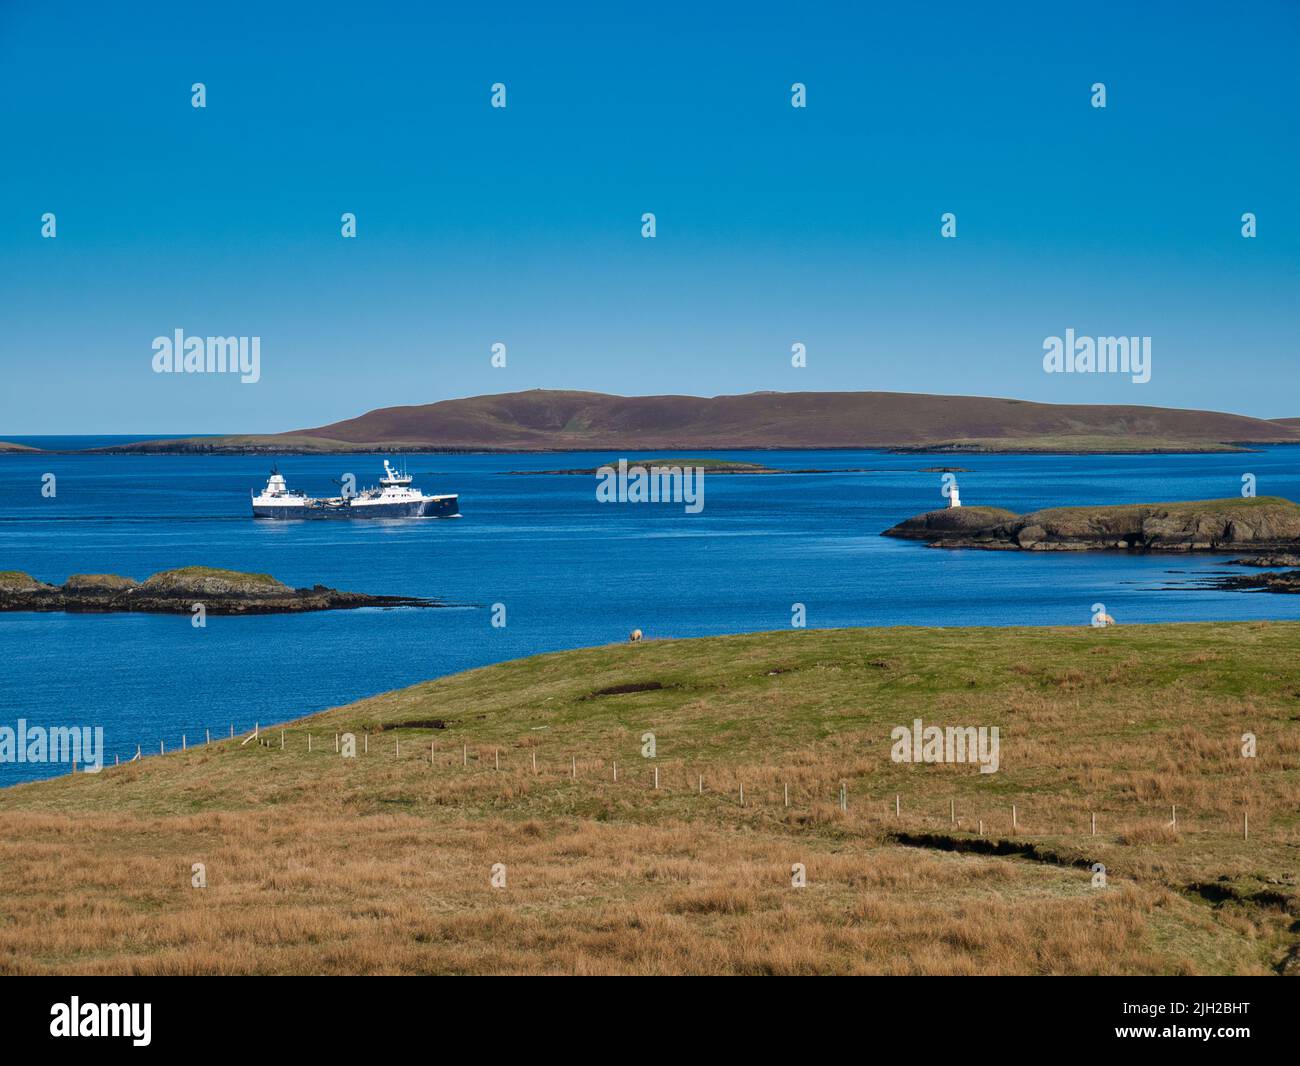 Un bateau bleu et blanc sans nom navigue sur une eau calme en direction de Lerwick à Shetland, en Écosse, au Royaume-Uni. Pris sur une journée calme et ensoleillée avec le ciel bleu et pas de nuages. Banque D'Images